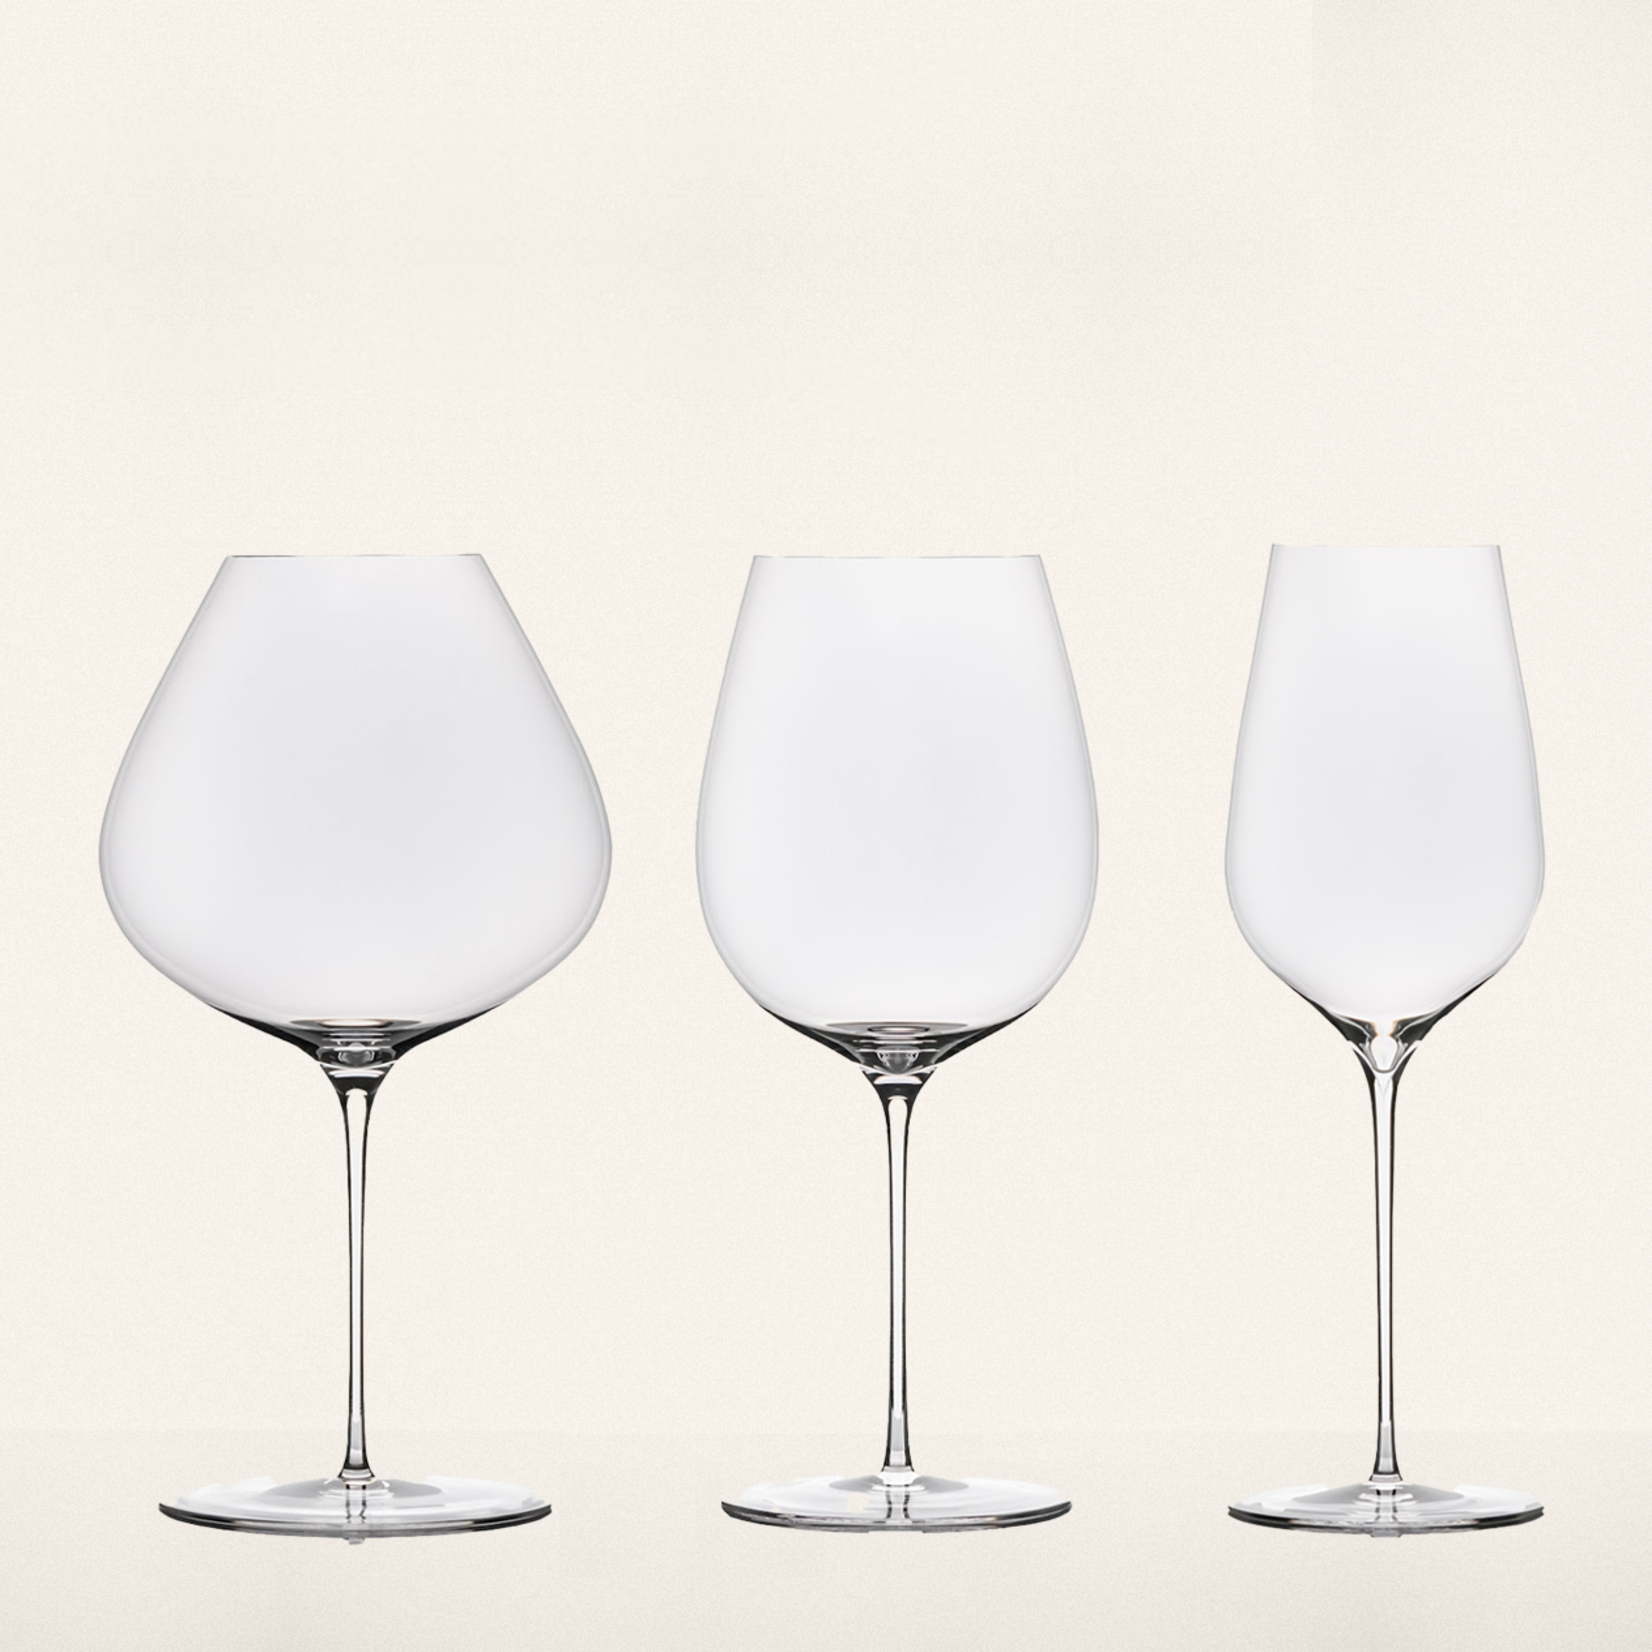 Sydonios Septentrional - set of 2 glasses